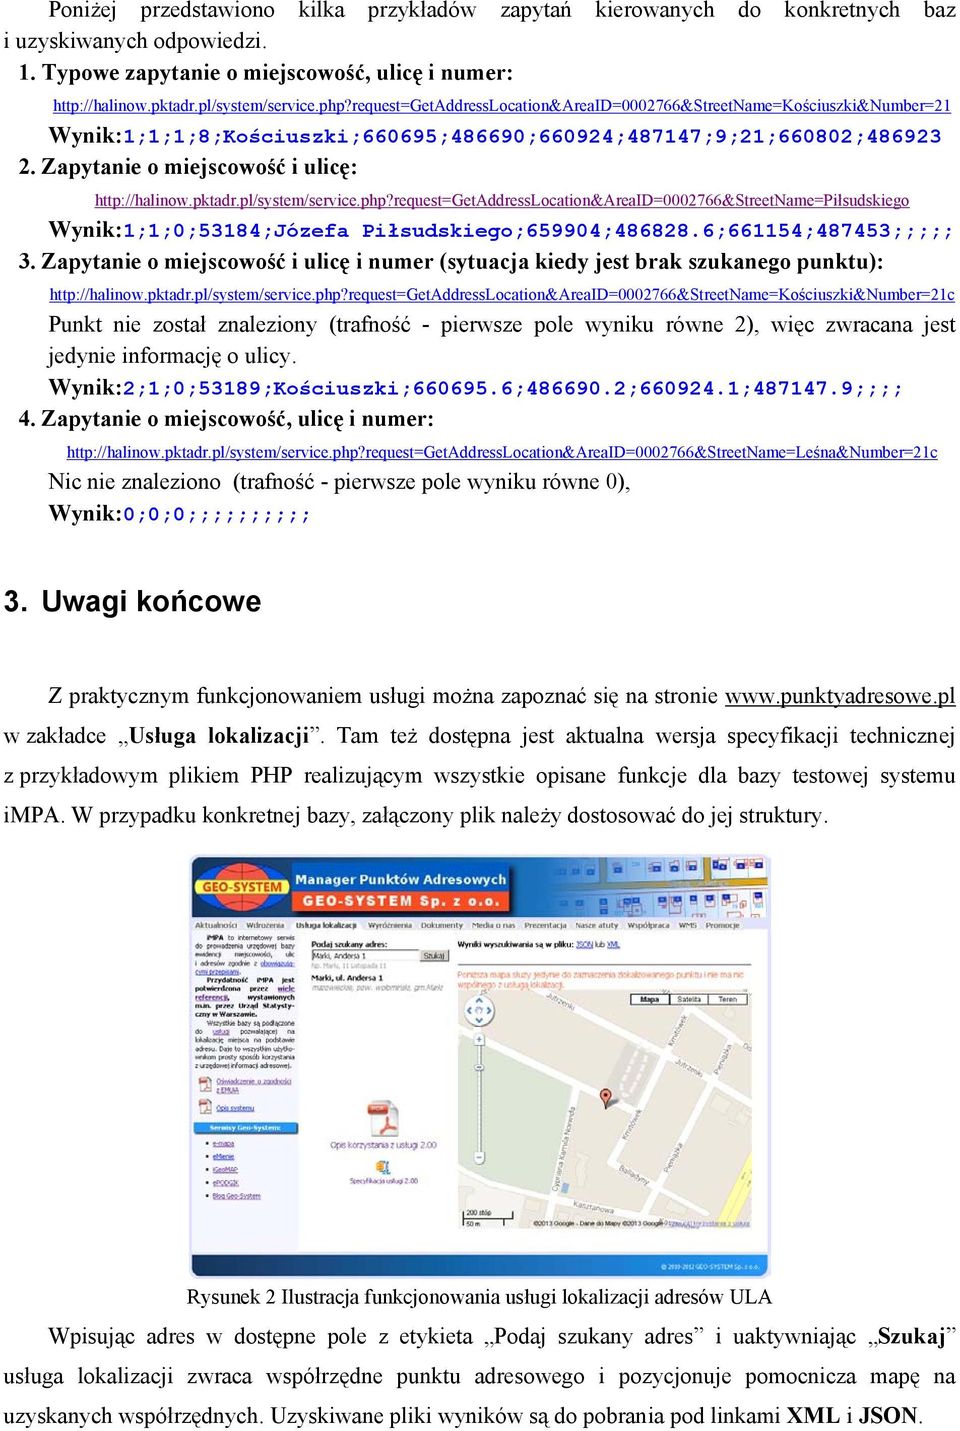 pktadr.pl/system/service.php?request=getaddresslocation&areaid=0002766&streetname=piłsudskiego Wynik:1;1;0;53184;Józefa Piłsudskiego;659904;486828.6;661154;487453;;;;; 3.